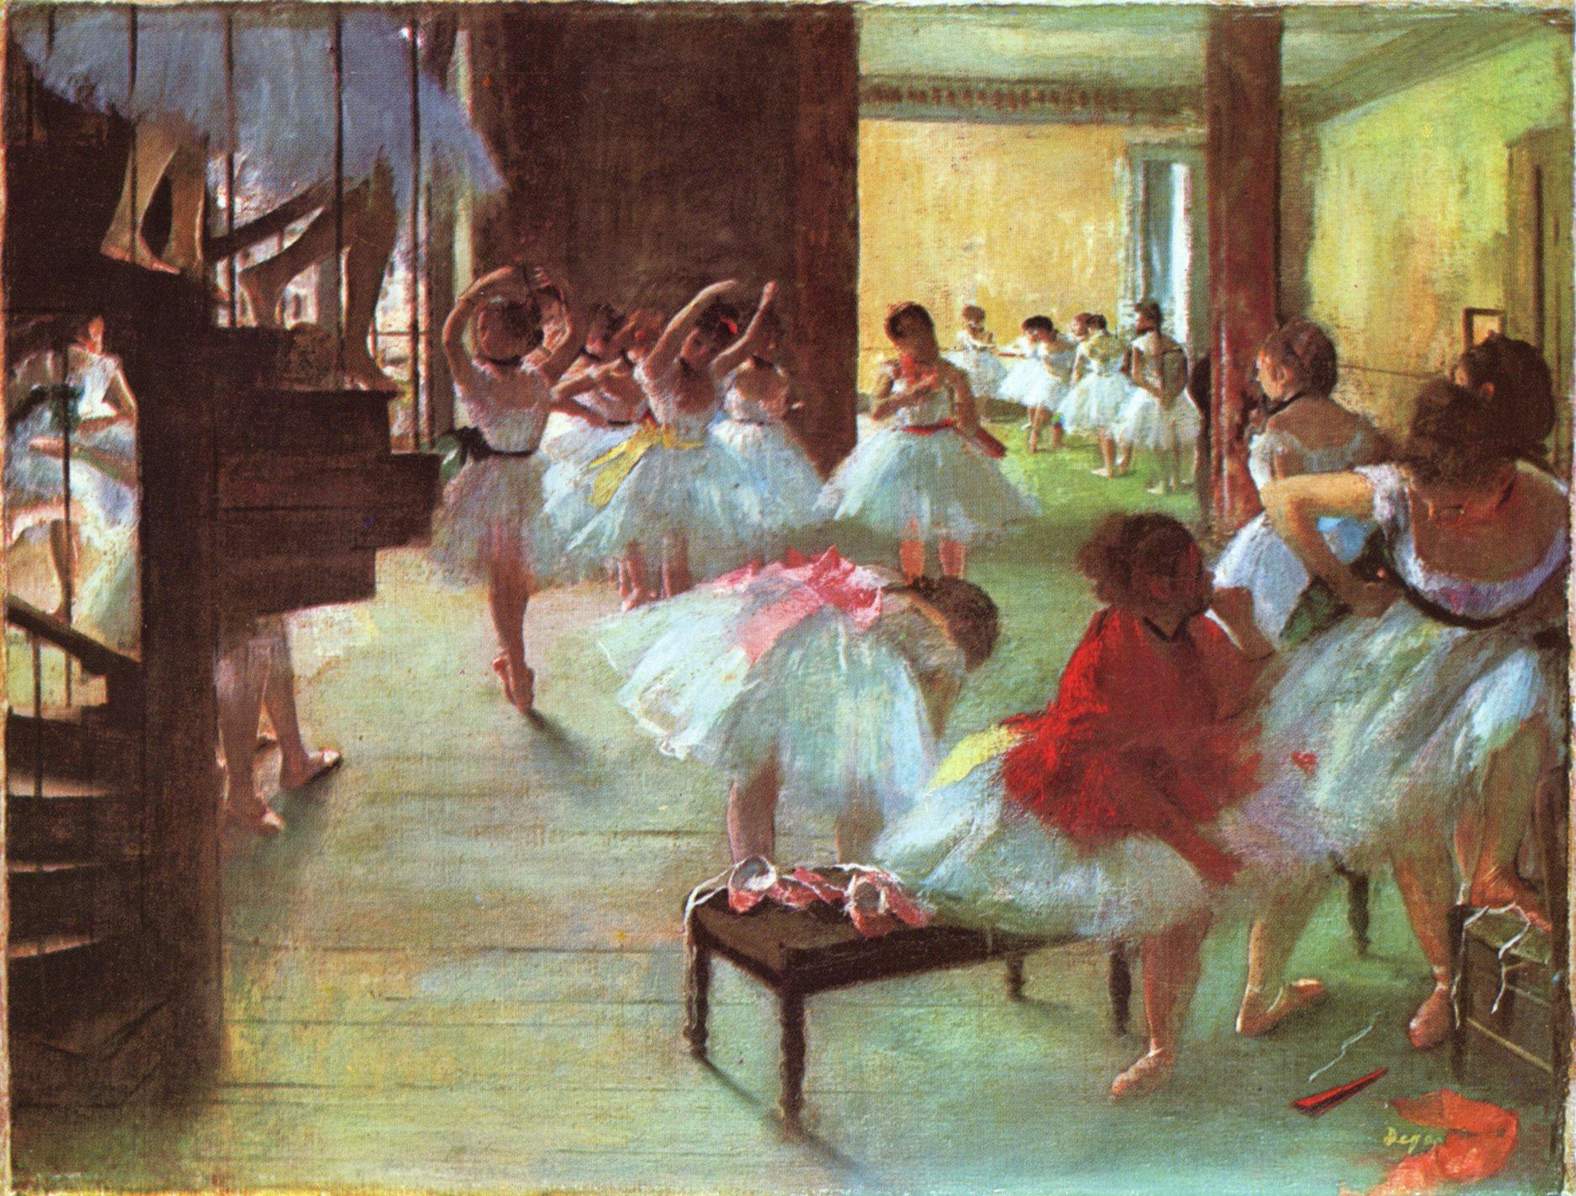 Edgar+Degas-1834-1917 (320).jpg